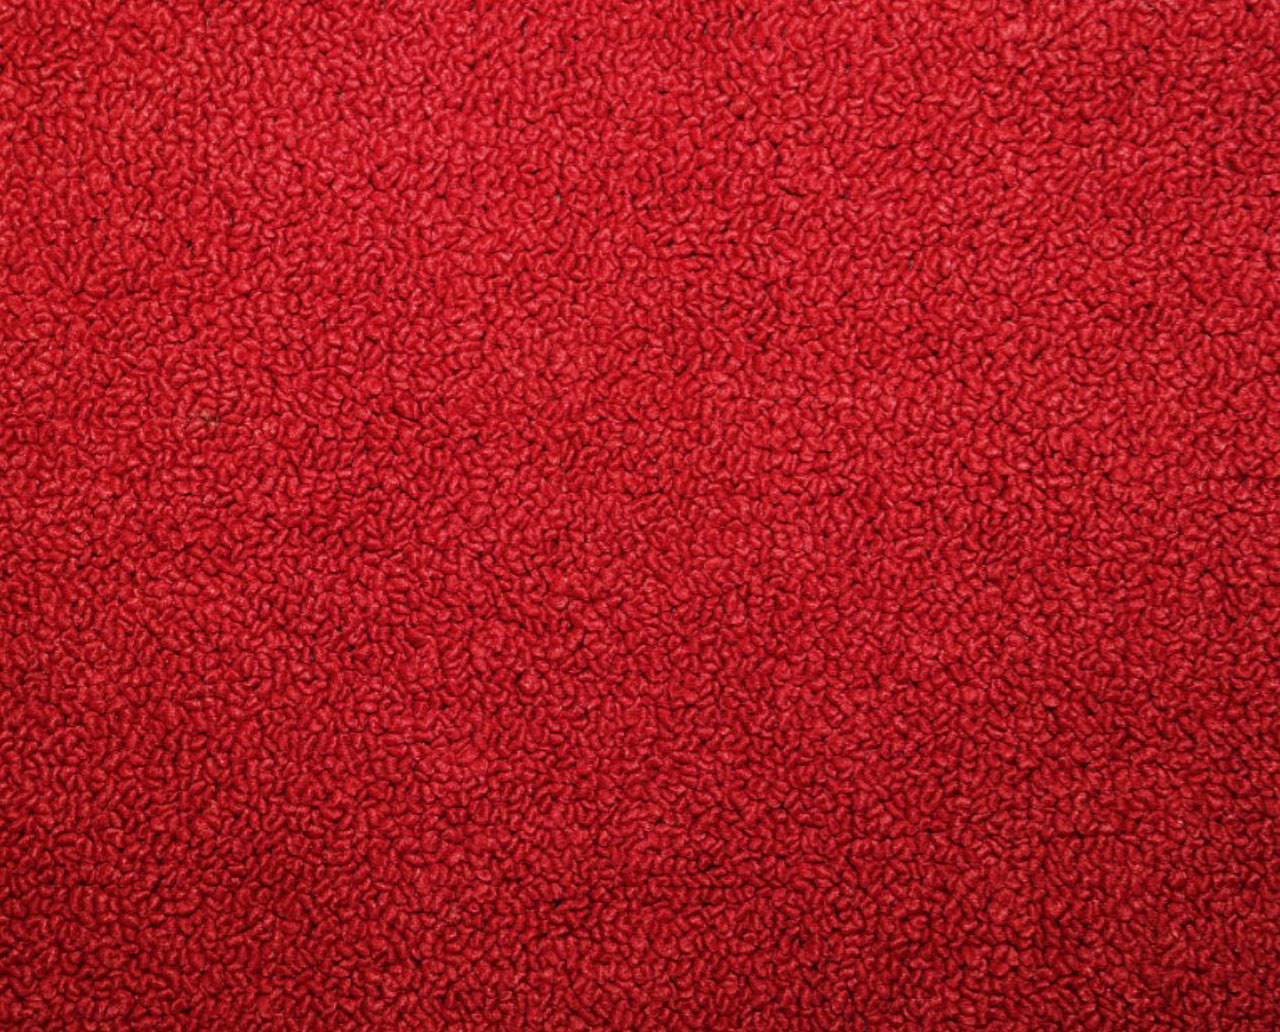 Holden Kingswood HK Kingswood Sedan 12G Goya Red & Castillion Weave Carpet (Image 1 of 1)